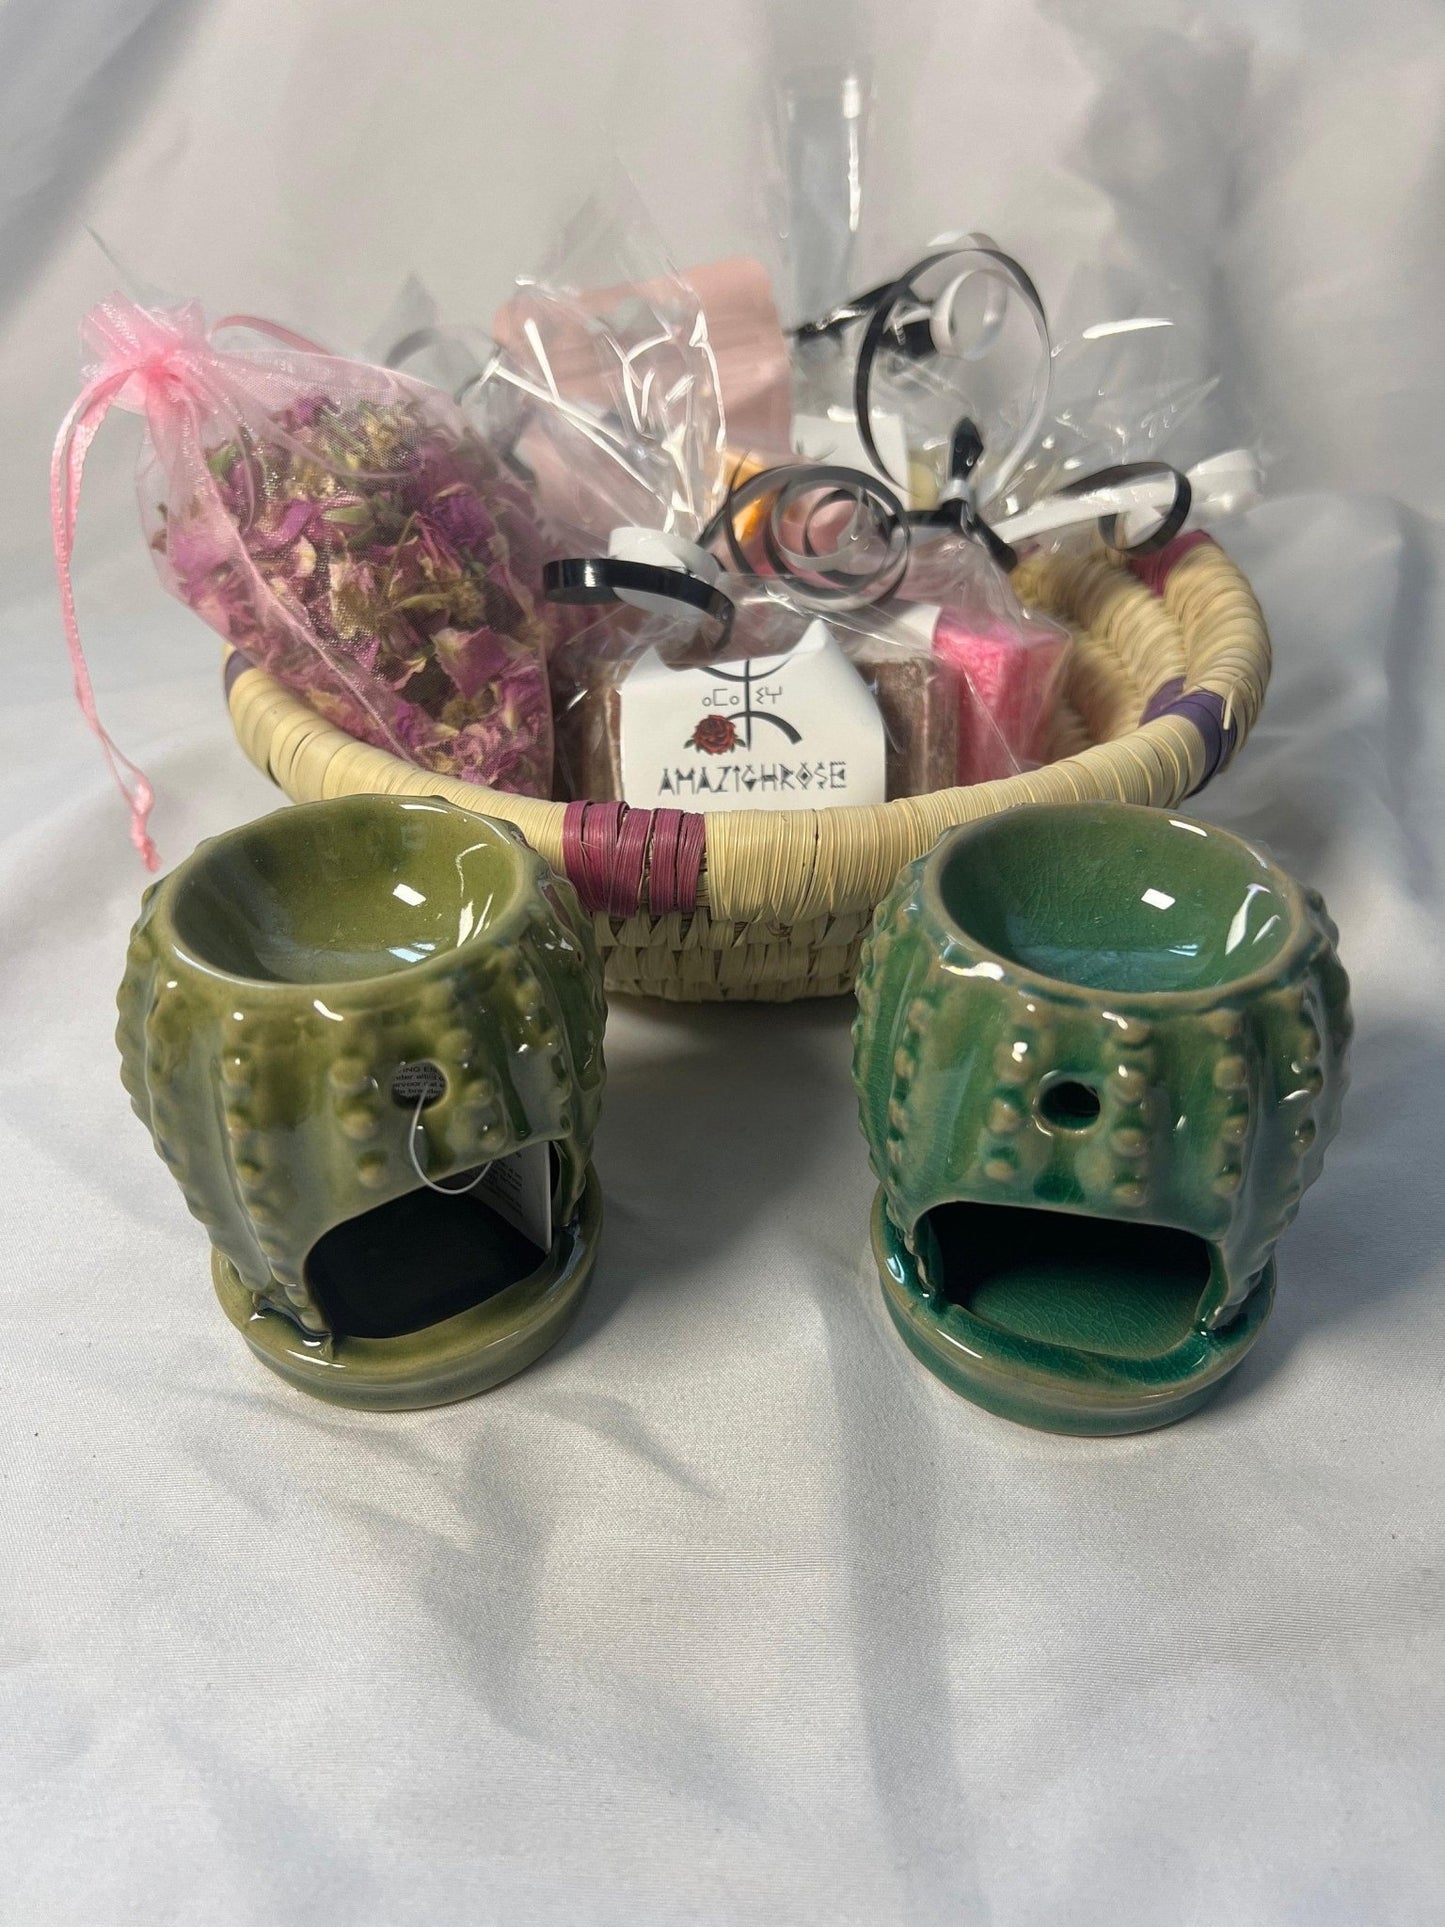 Amber Gift Basket - Amazighrose